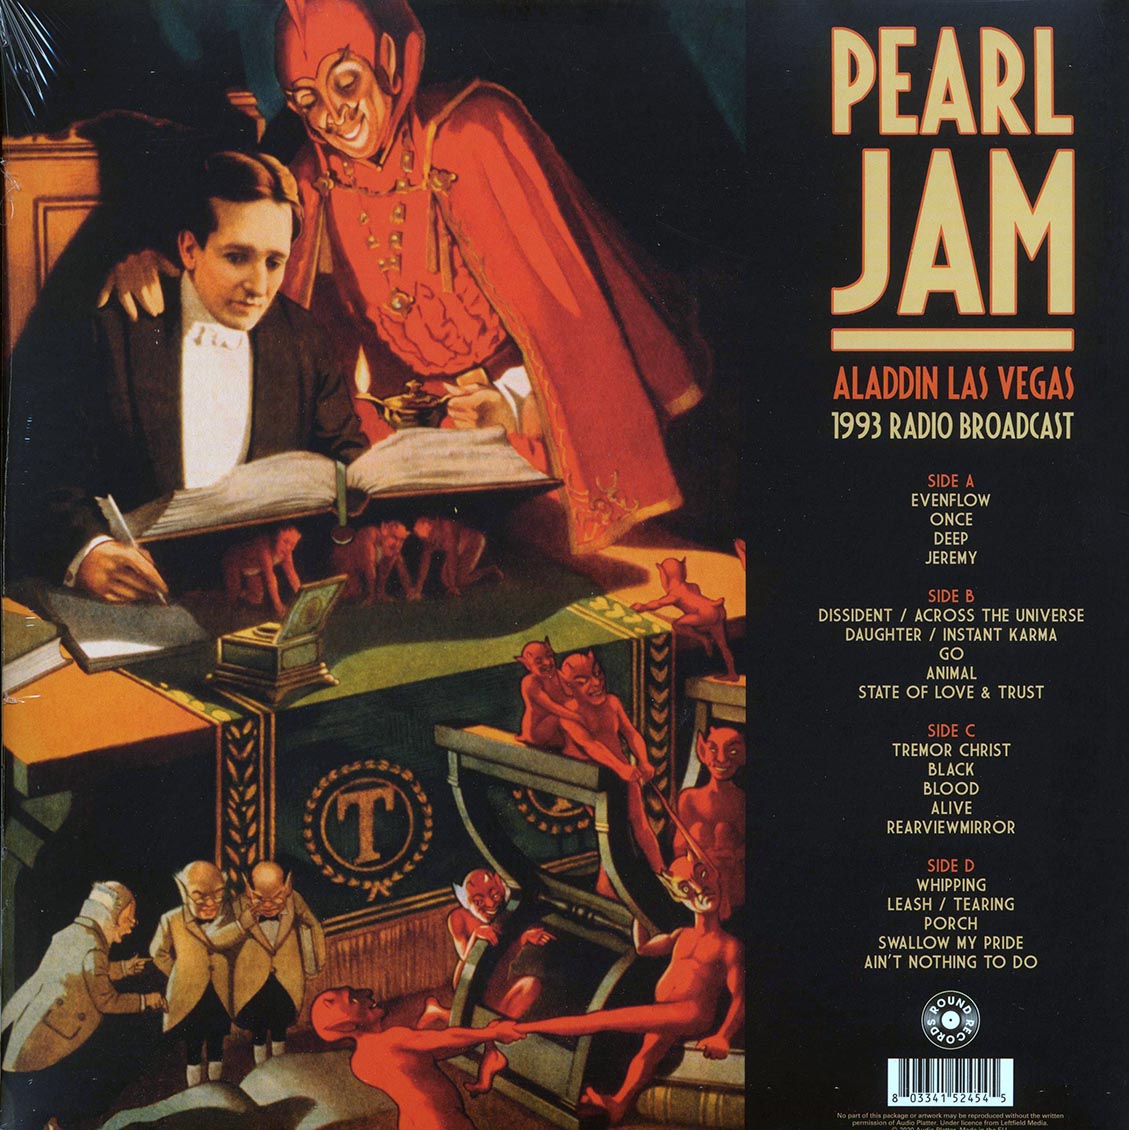 Pearl Jam - Aladdin Las Vegas 1993 Radio Broadcast